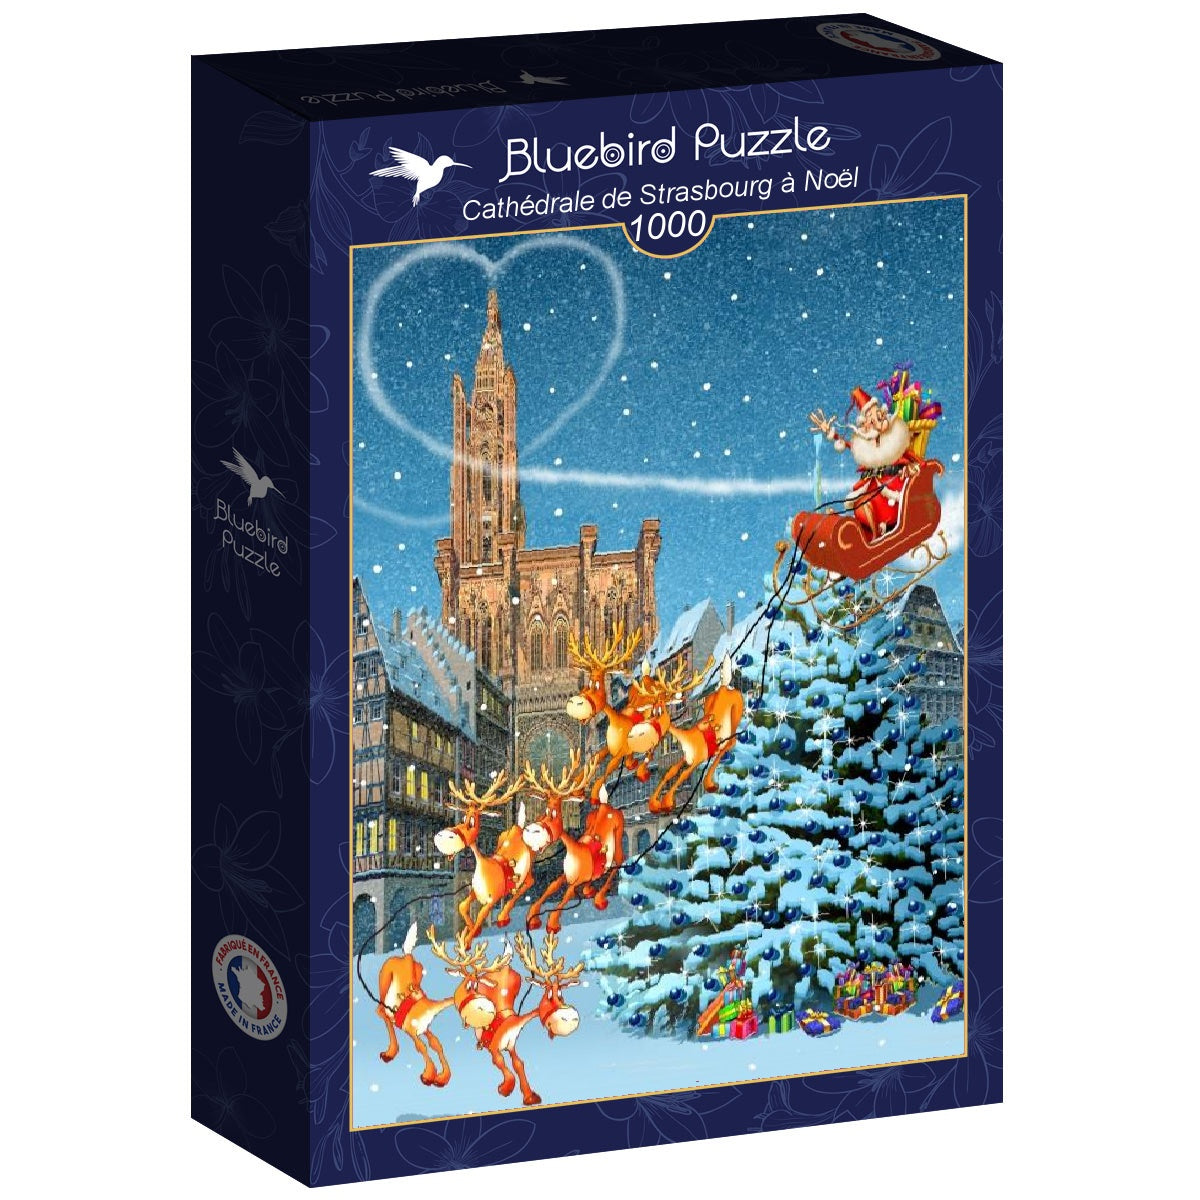 Bluebird Puzzle - Cathédrale de Strasbourg à Noël - 1000 Piece Jigsaw Puzzle